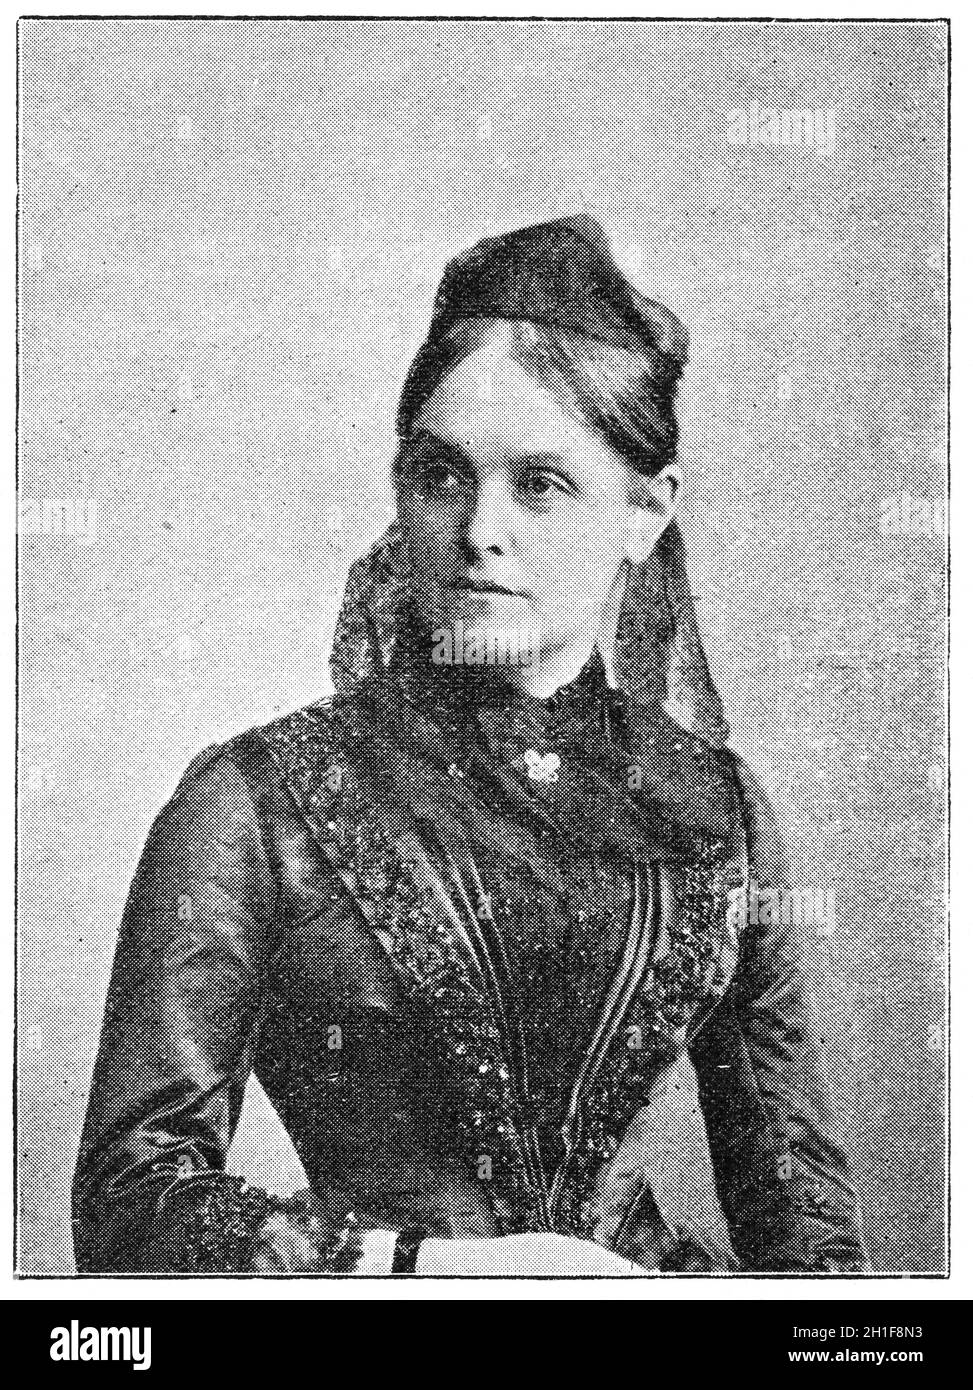 Porträt von Minna Cauer - eine deutsche Pädagogin, Journalistin und radikale Aktivistin innerhalb der bürgerlichen Frauenbewegung. Illustration des 19. Jahrhunderts Stockfoto